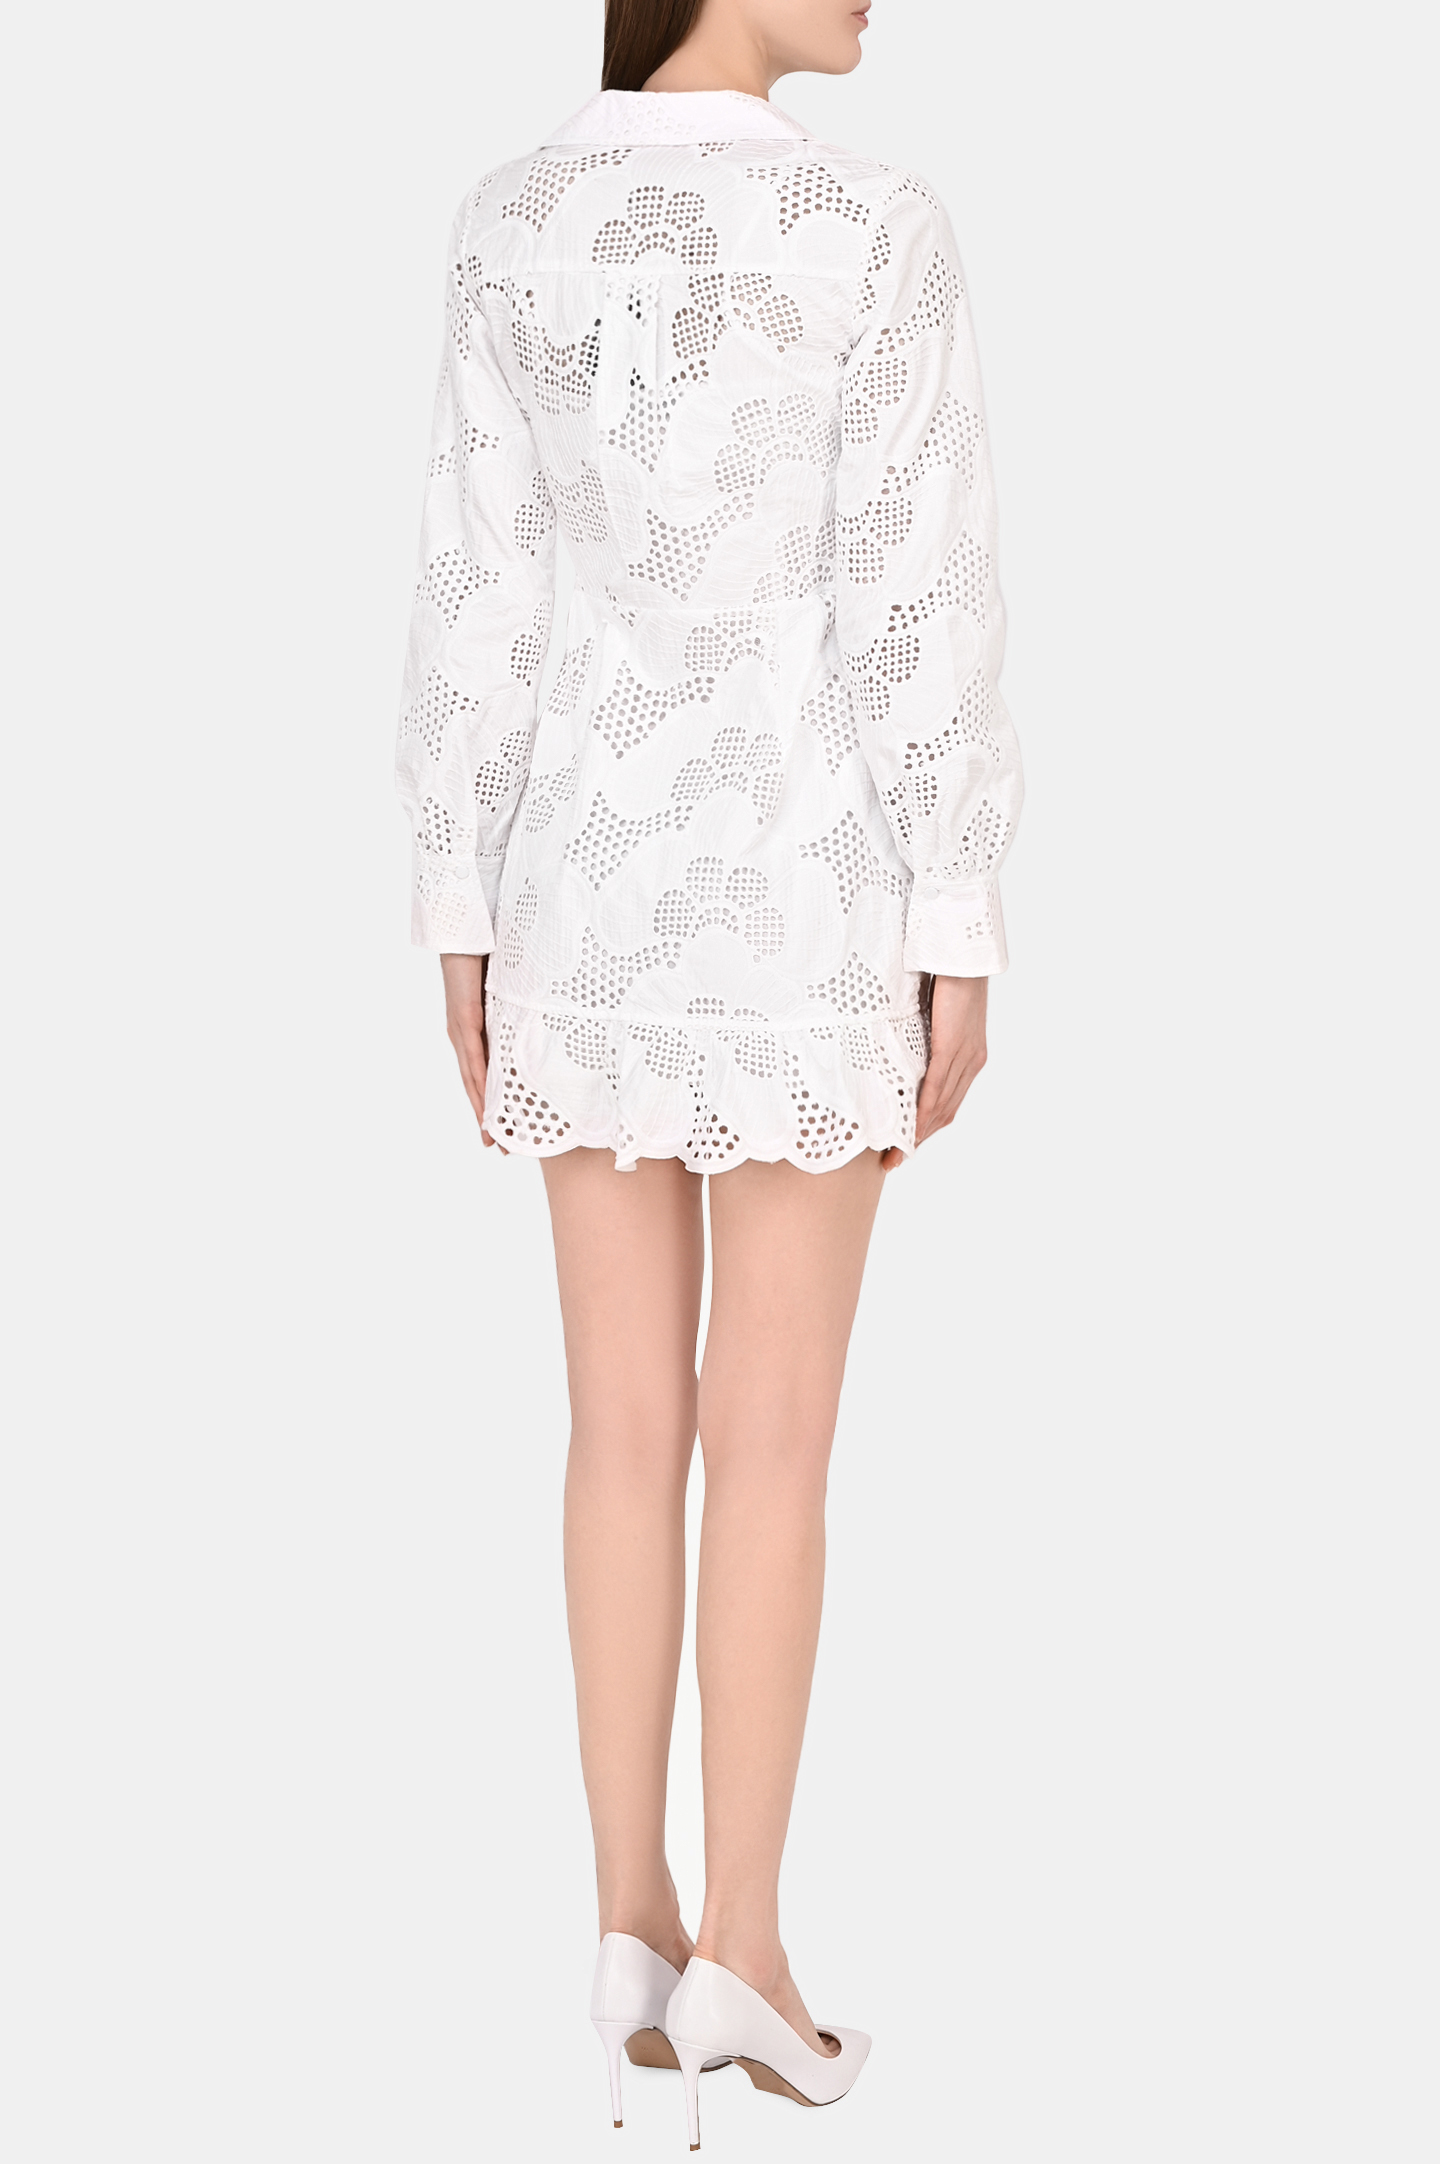 Платье SELF PORTRAIT RS22-154, цвет: Белый, Женский